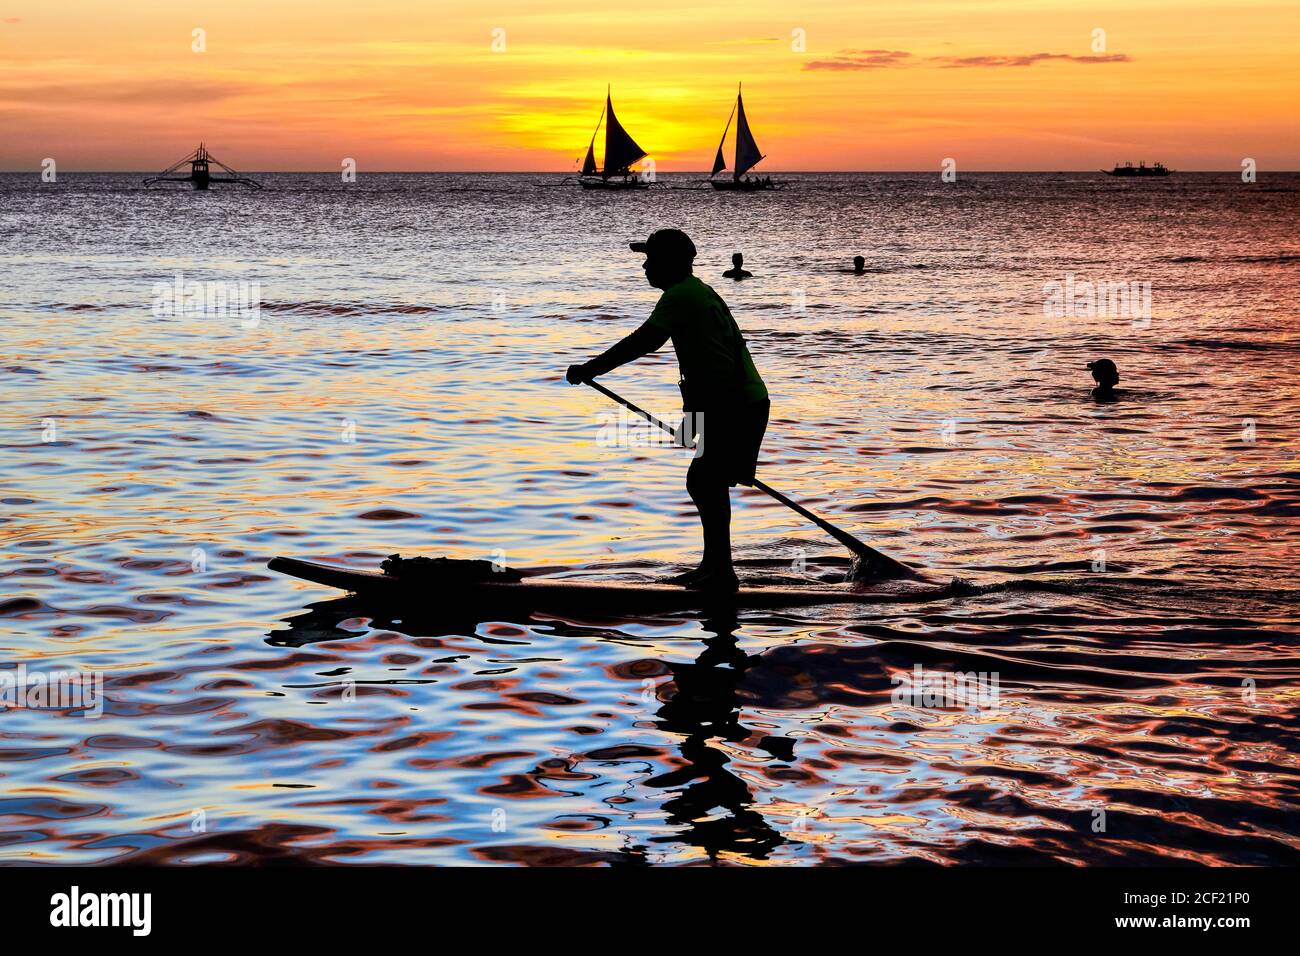 La silhouette di un uomo su una tavola da paddle, la gente che nuota e due barche a vela al tramonto lungo la spiaggia bianca sull'isola di Boracay, Aklan, Filippine. Foto Stock